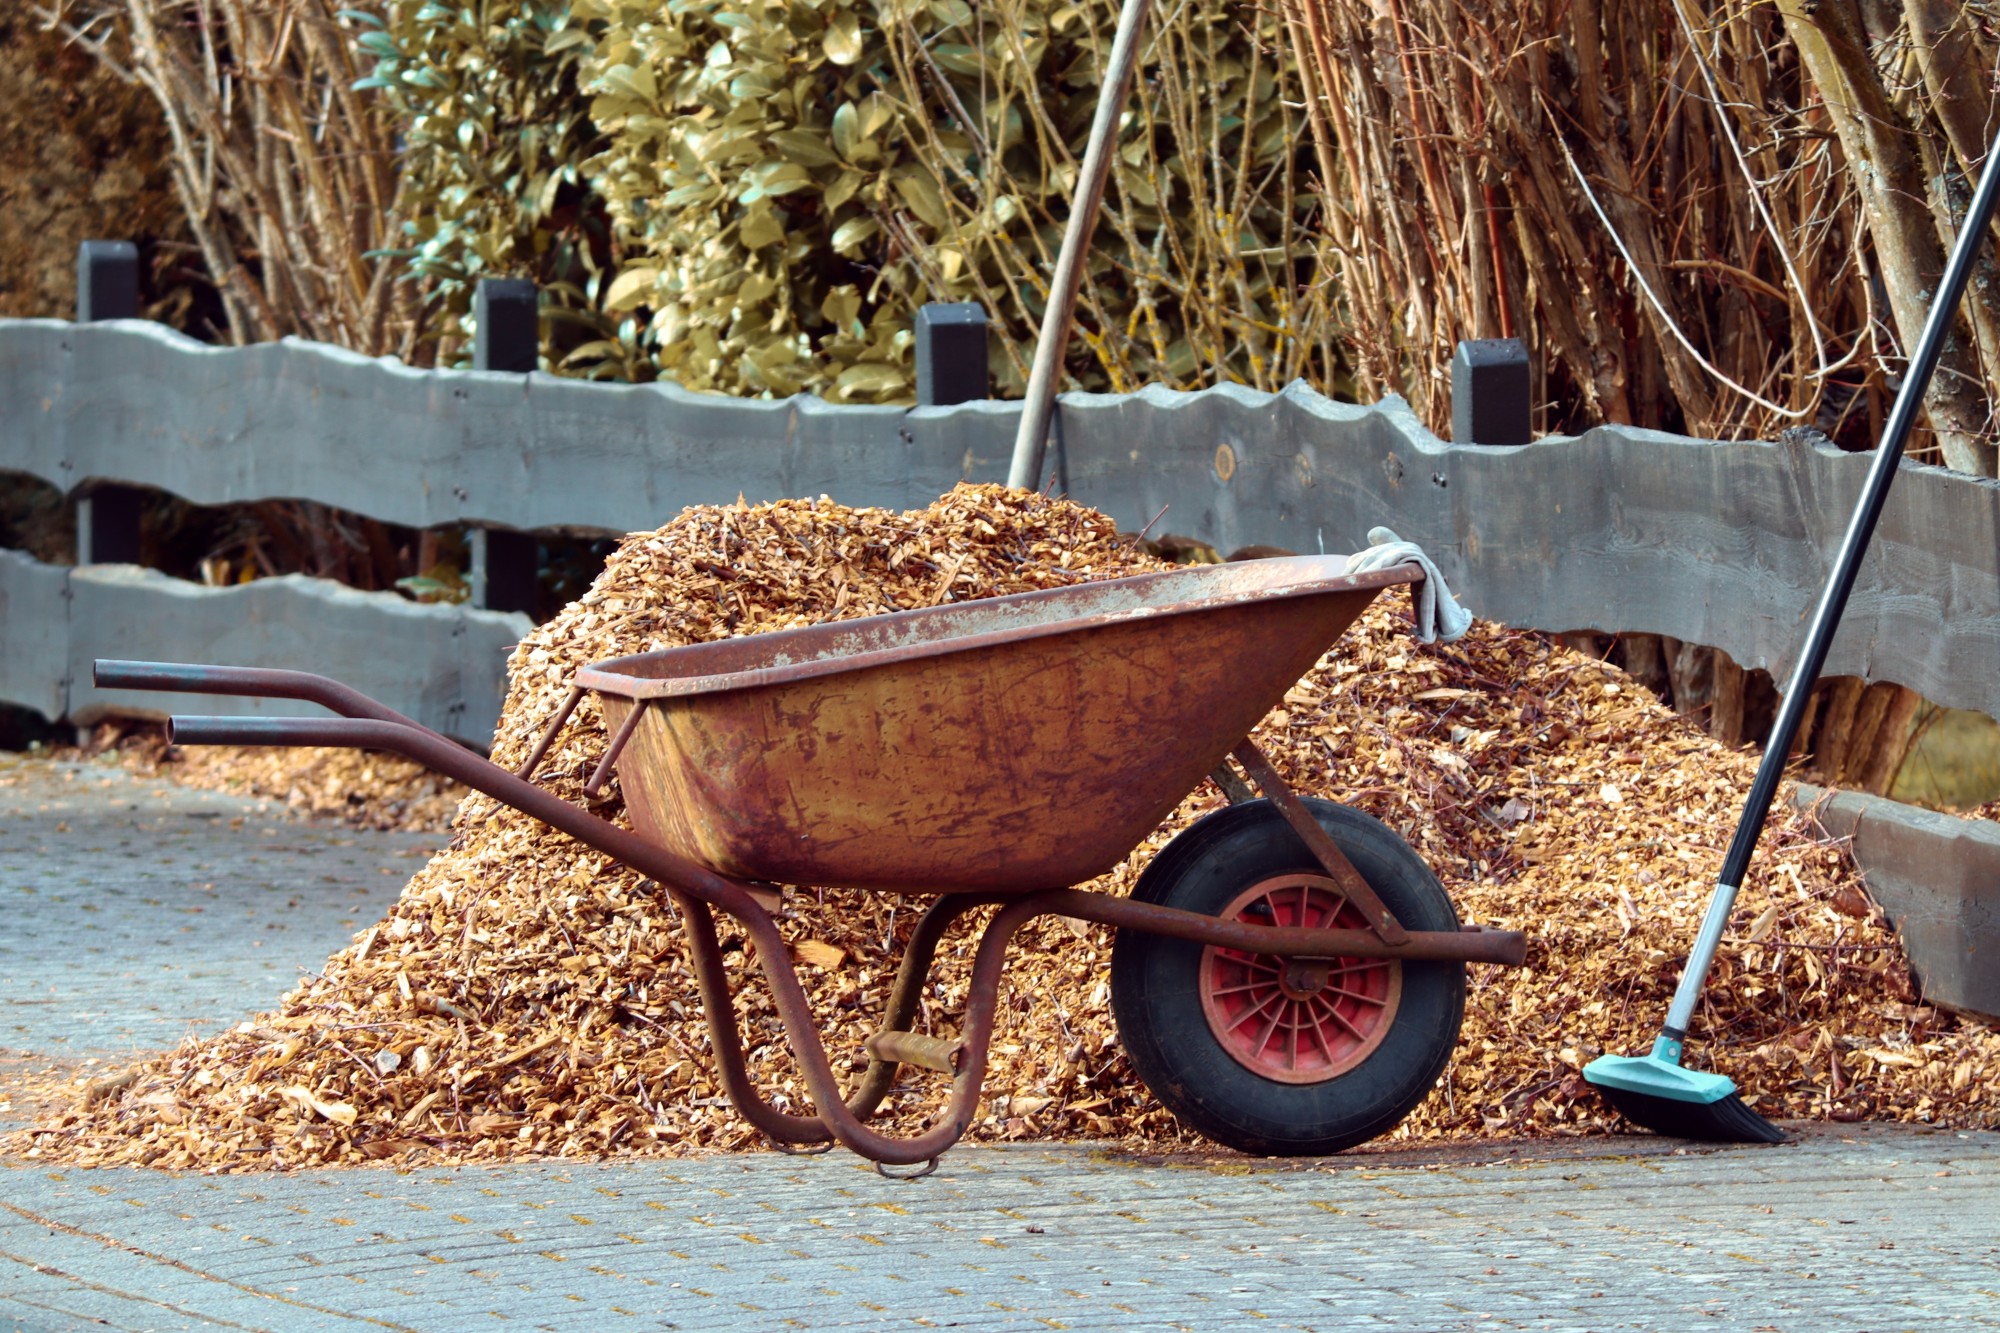 wheel barrow in front of mulch